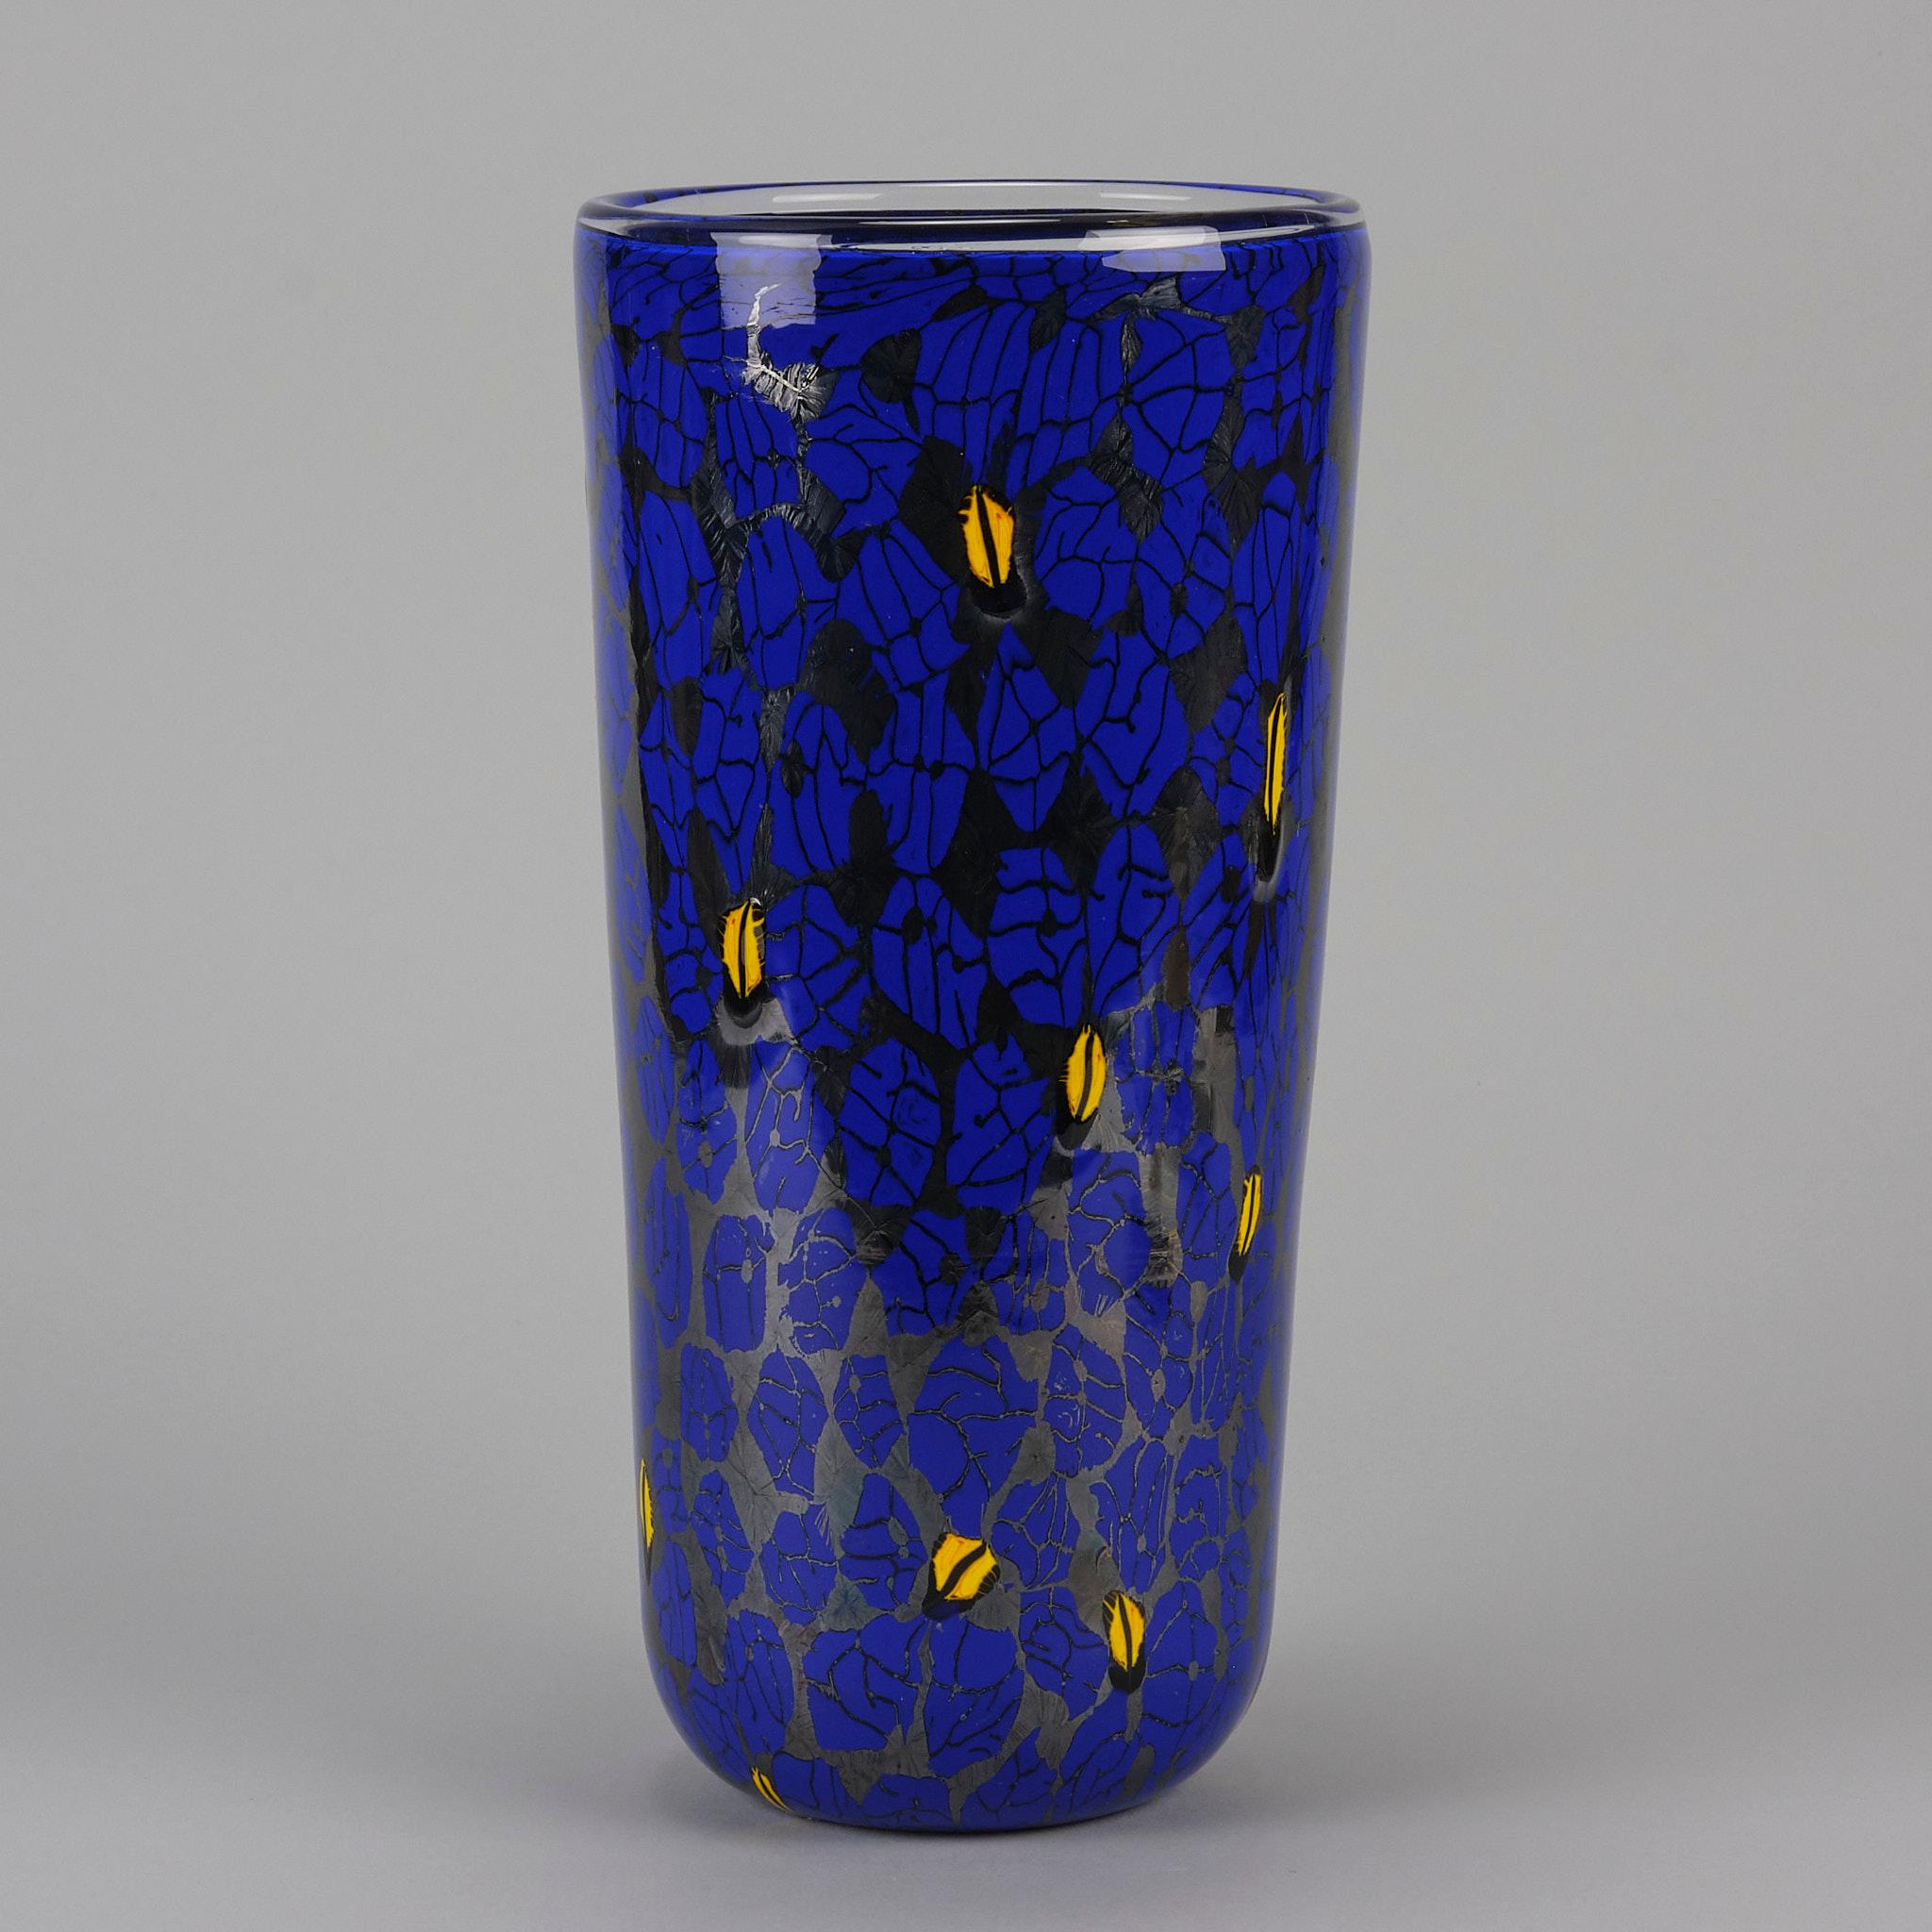 Un fabuleux vase en verre clair de Vittorio Ferro avec des murrines marbrées fondues dans des tons de bleu et de jaune. Labellisé Ferro Vittorio et avec l'étiquette originale de Murano

INFORMATIONS COMPLÉMENTAIRES
Hauteur :                         